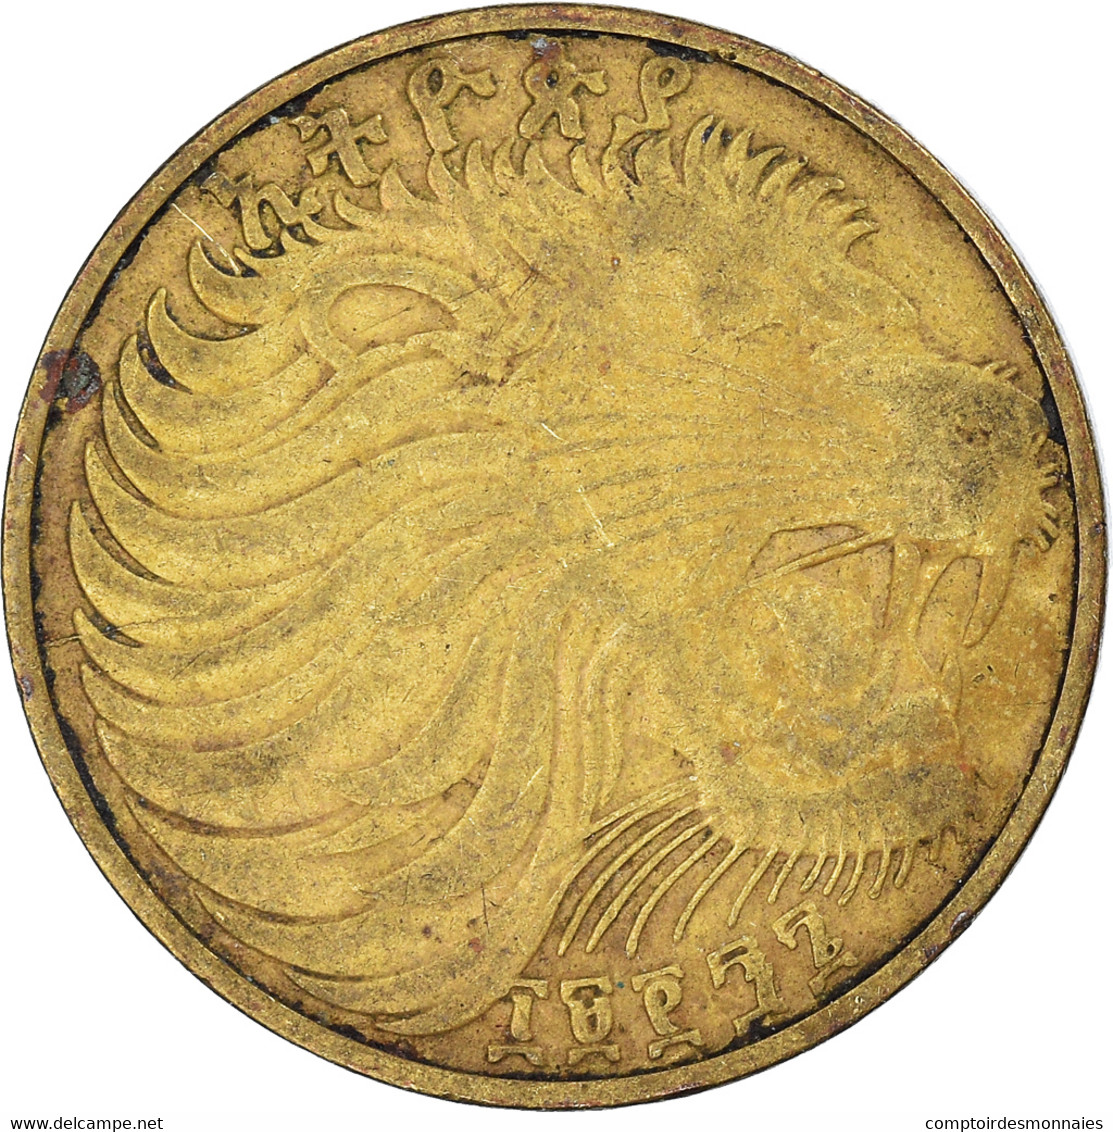 Monnaie, Éthiopie, 10 Cents, 1997 - Ethiopia